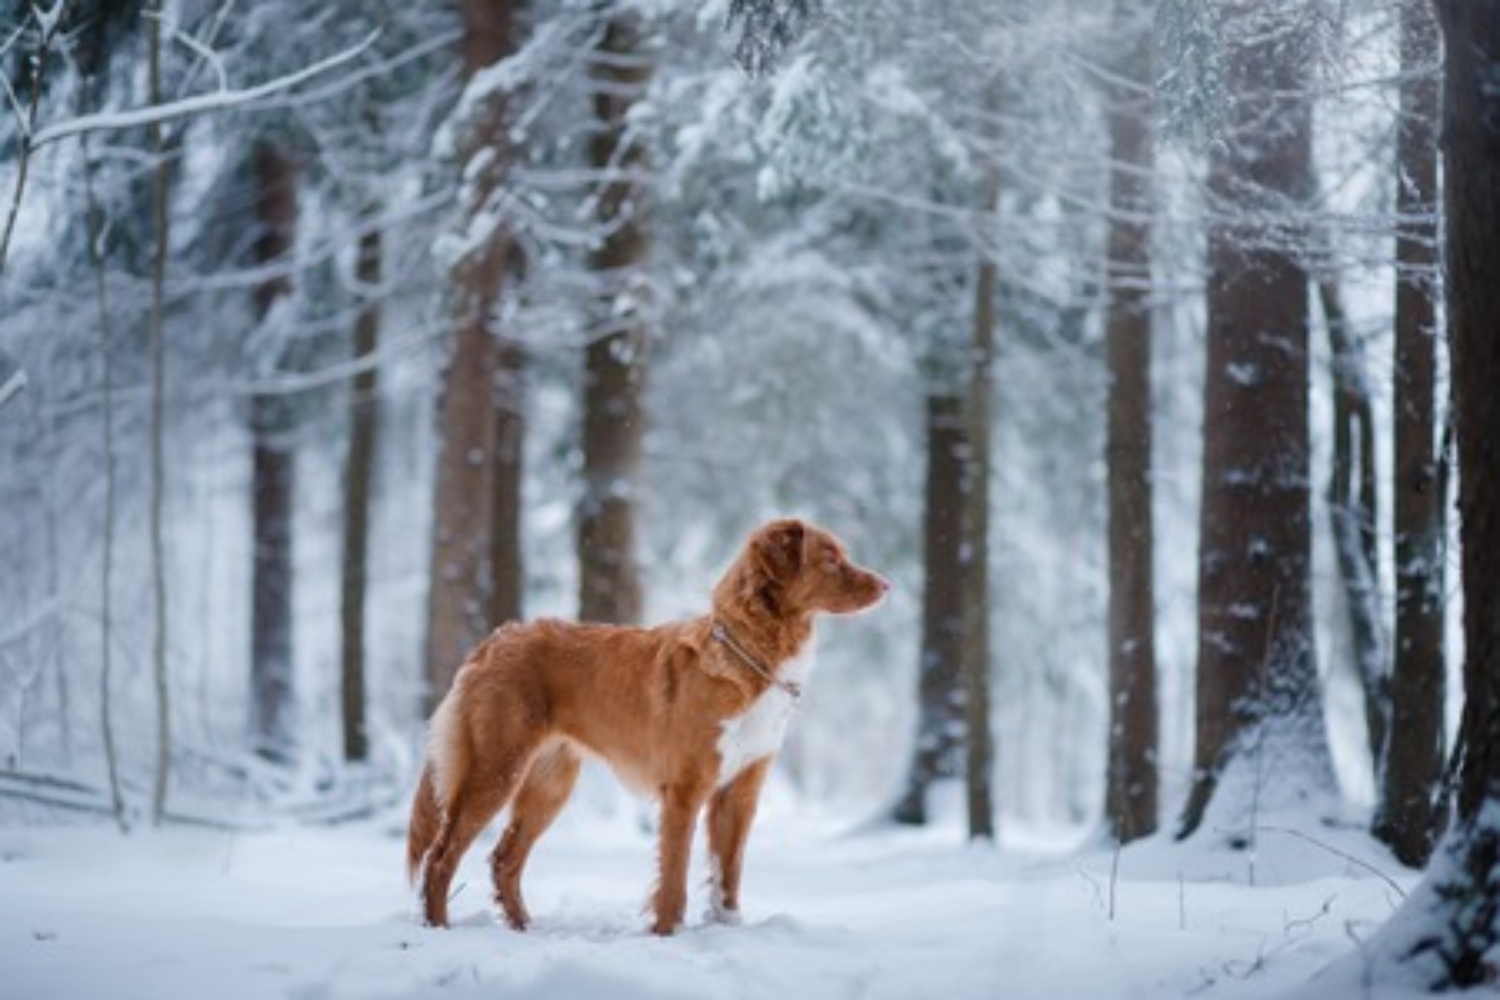 Met je hond in de sneeuw wandelen kan een hele mooie activiteit zijn. In deze donkere periode is het fijn als je toch nog even naar buiten kan, heerlijk een frisse neus halen. Mocht je voor een lange wandeling door de sneeuw gaan, dan zijn er wel een paar aandachtspuntjes om extra rekening mee te houden. Wij vertellen je erover in deze blog!